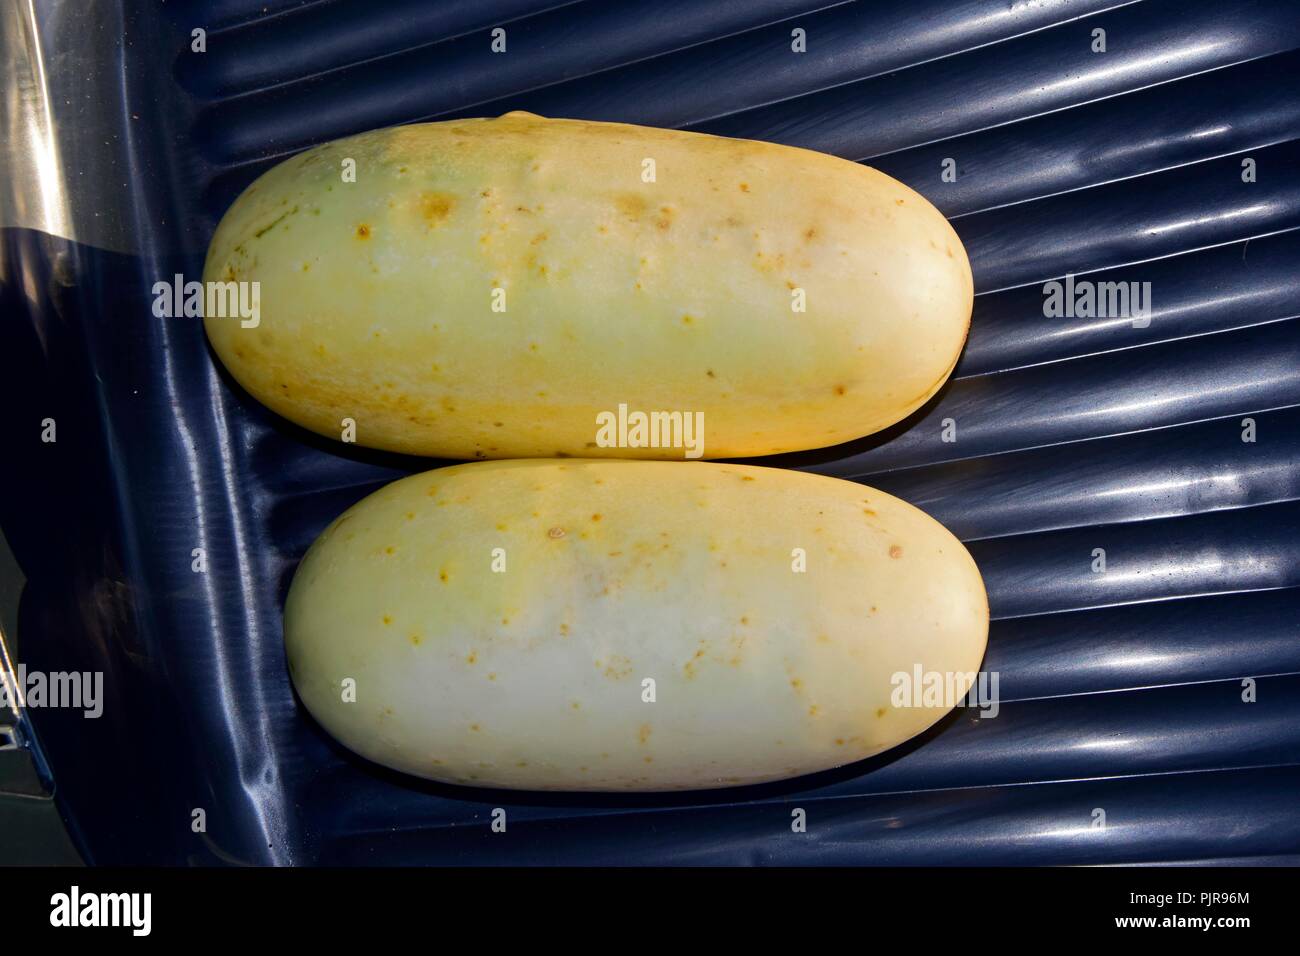 Deux fruits mûrs, jaunâtre en concombre close-up view Banque D'Images